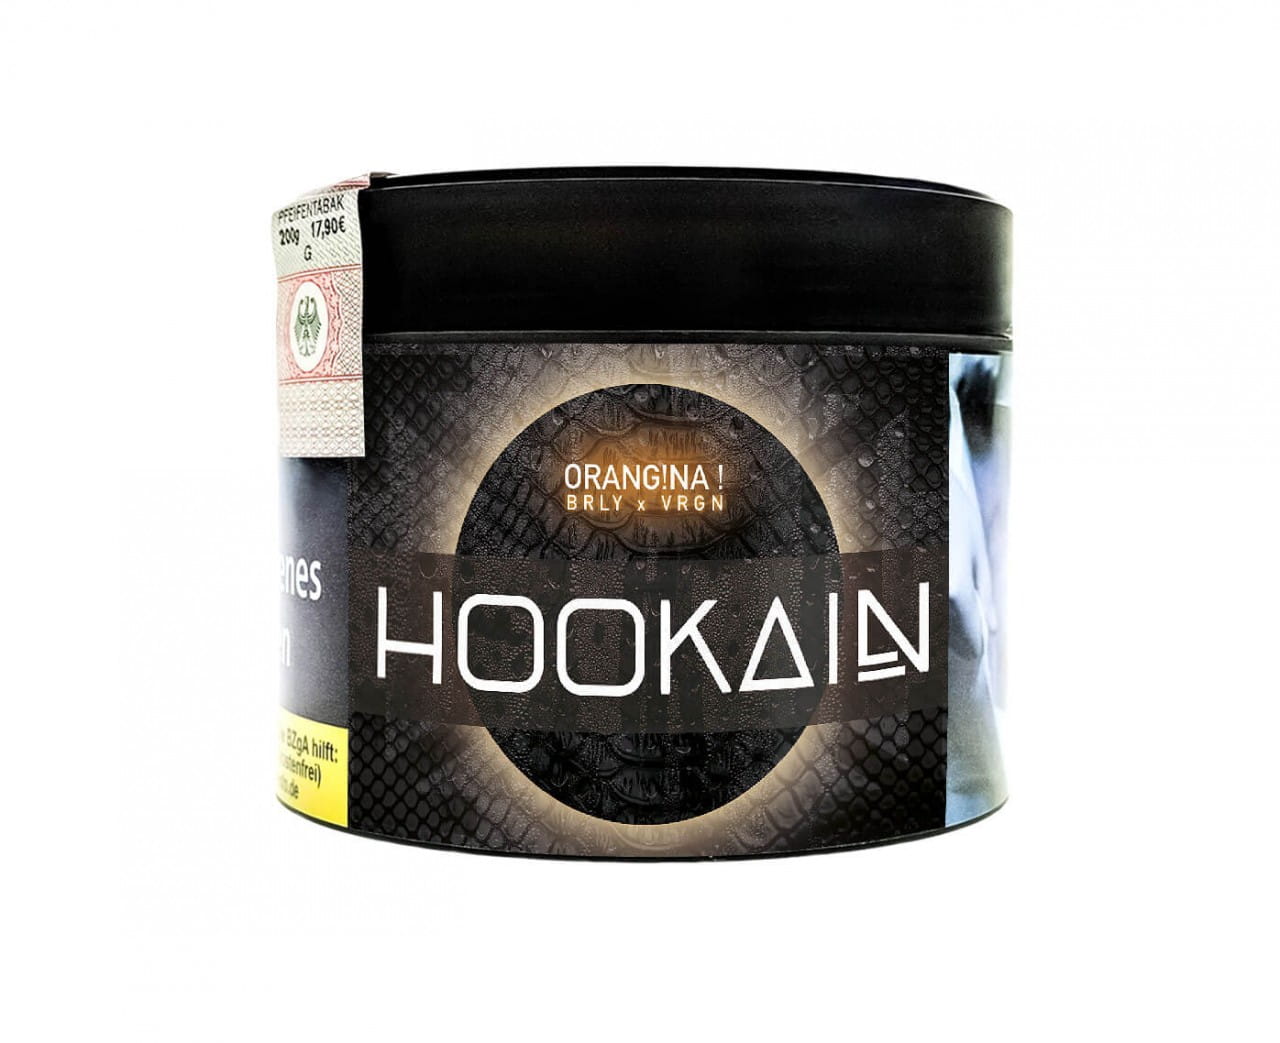 Hookain Burley Tabak - Orangina 200 g unter Shisha Tabak / Hookain Tabak